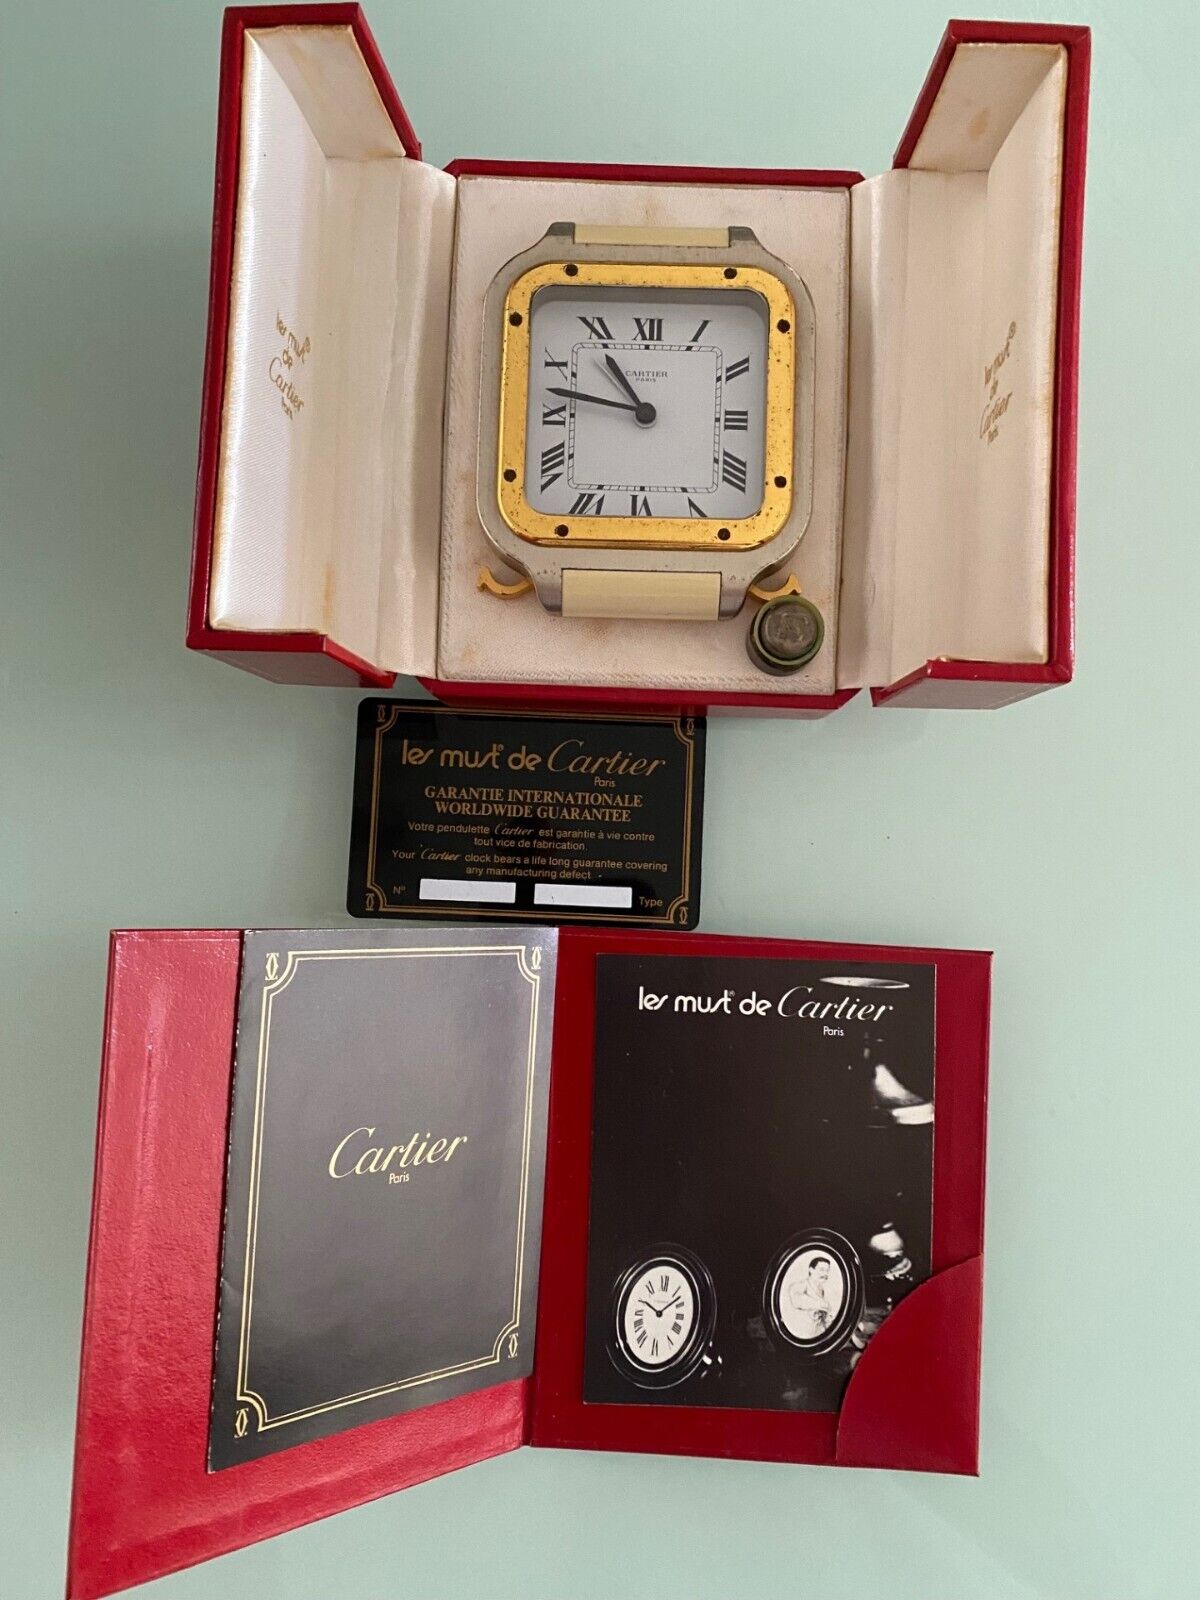 SANTOS de Cartier Table Desk Alarm Clock mod 7508 with box, manual, certificate